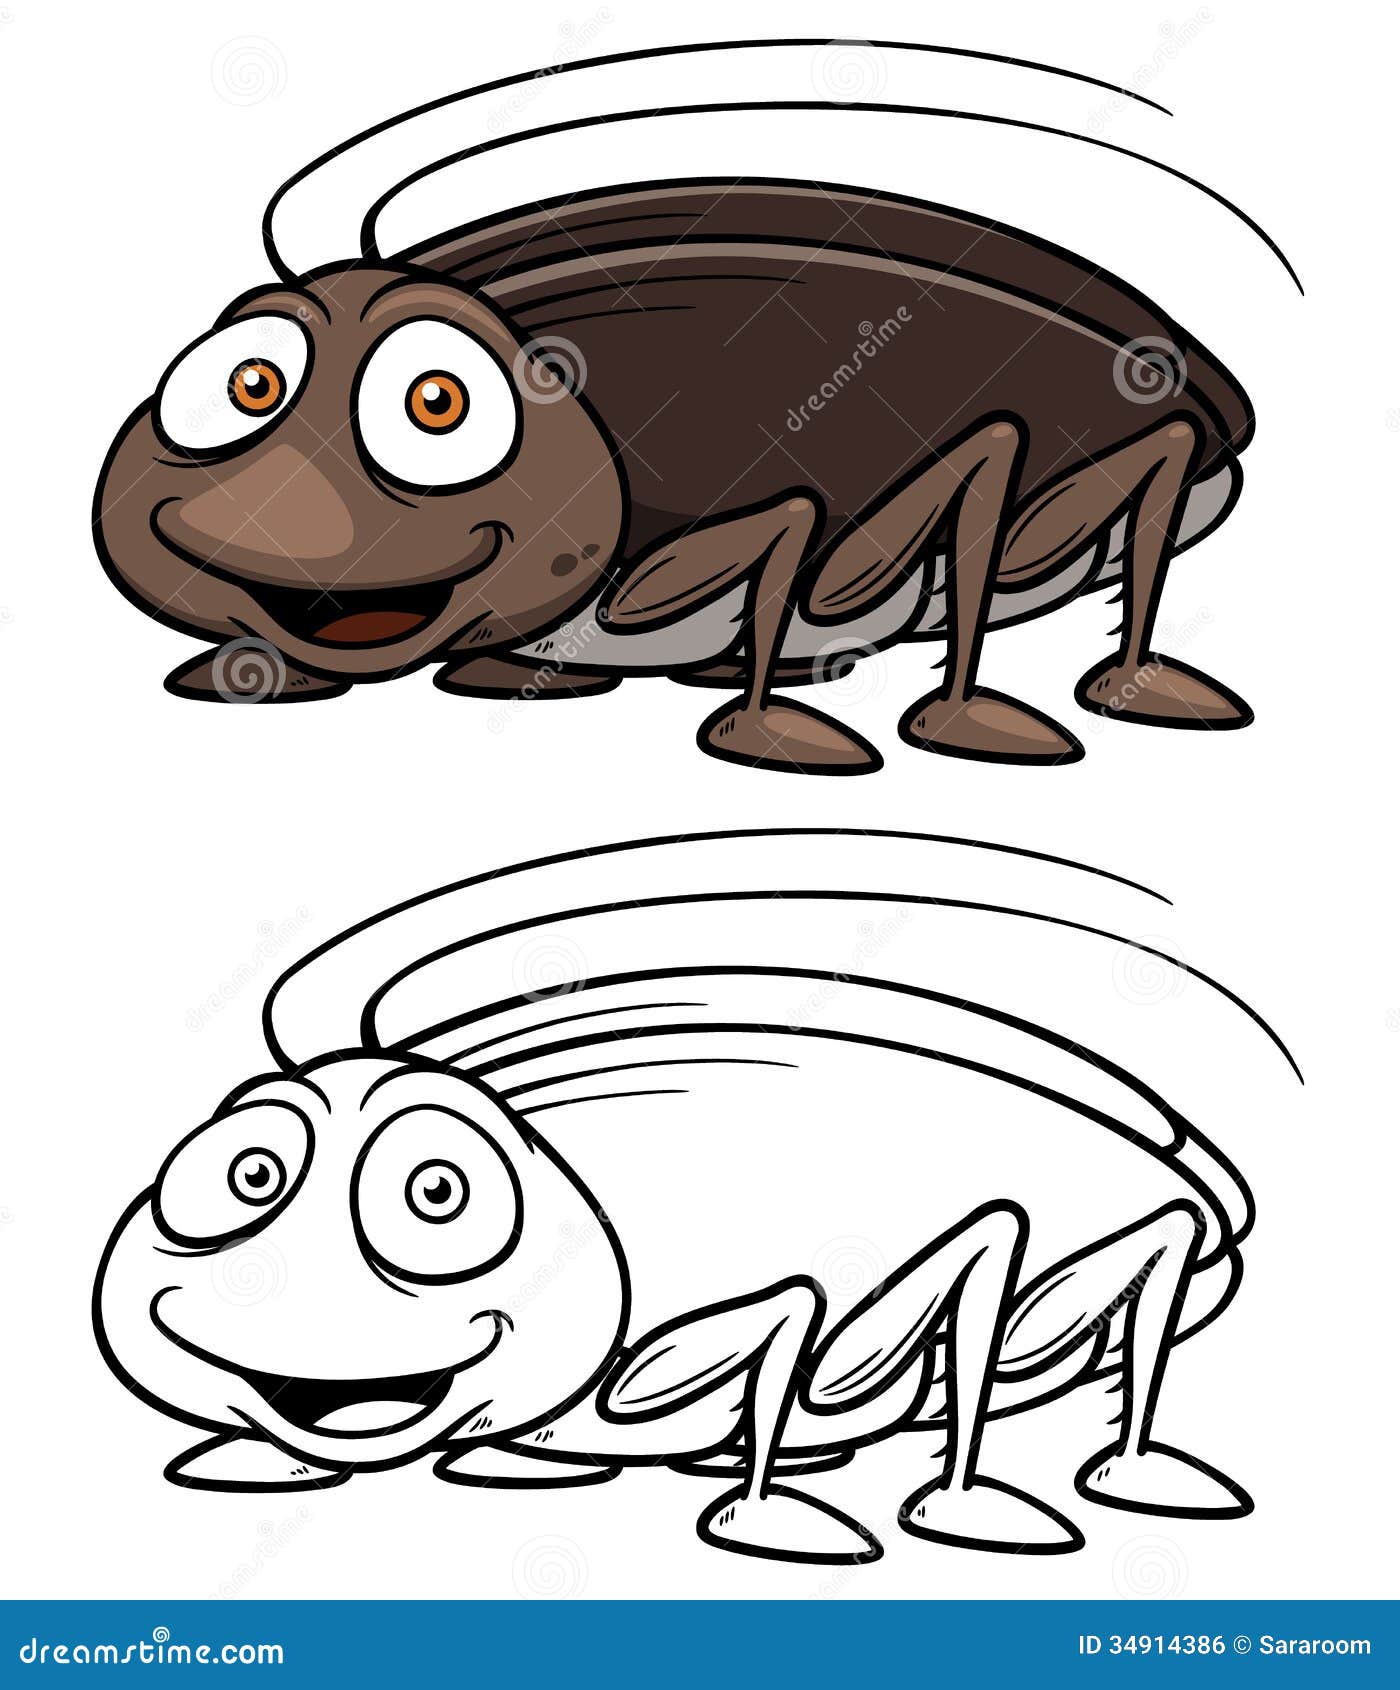 Cartoon cockroach st